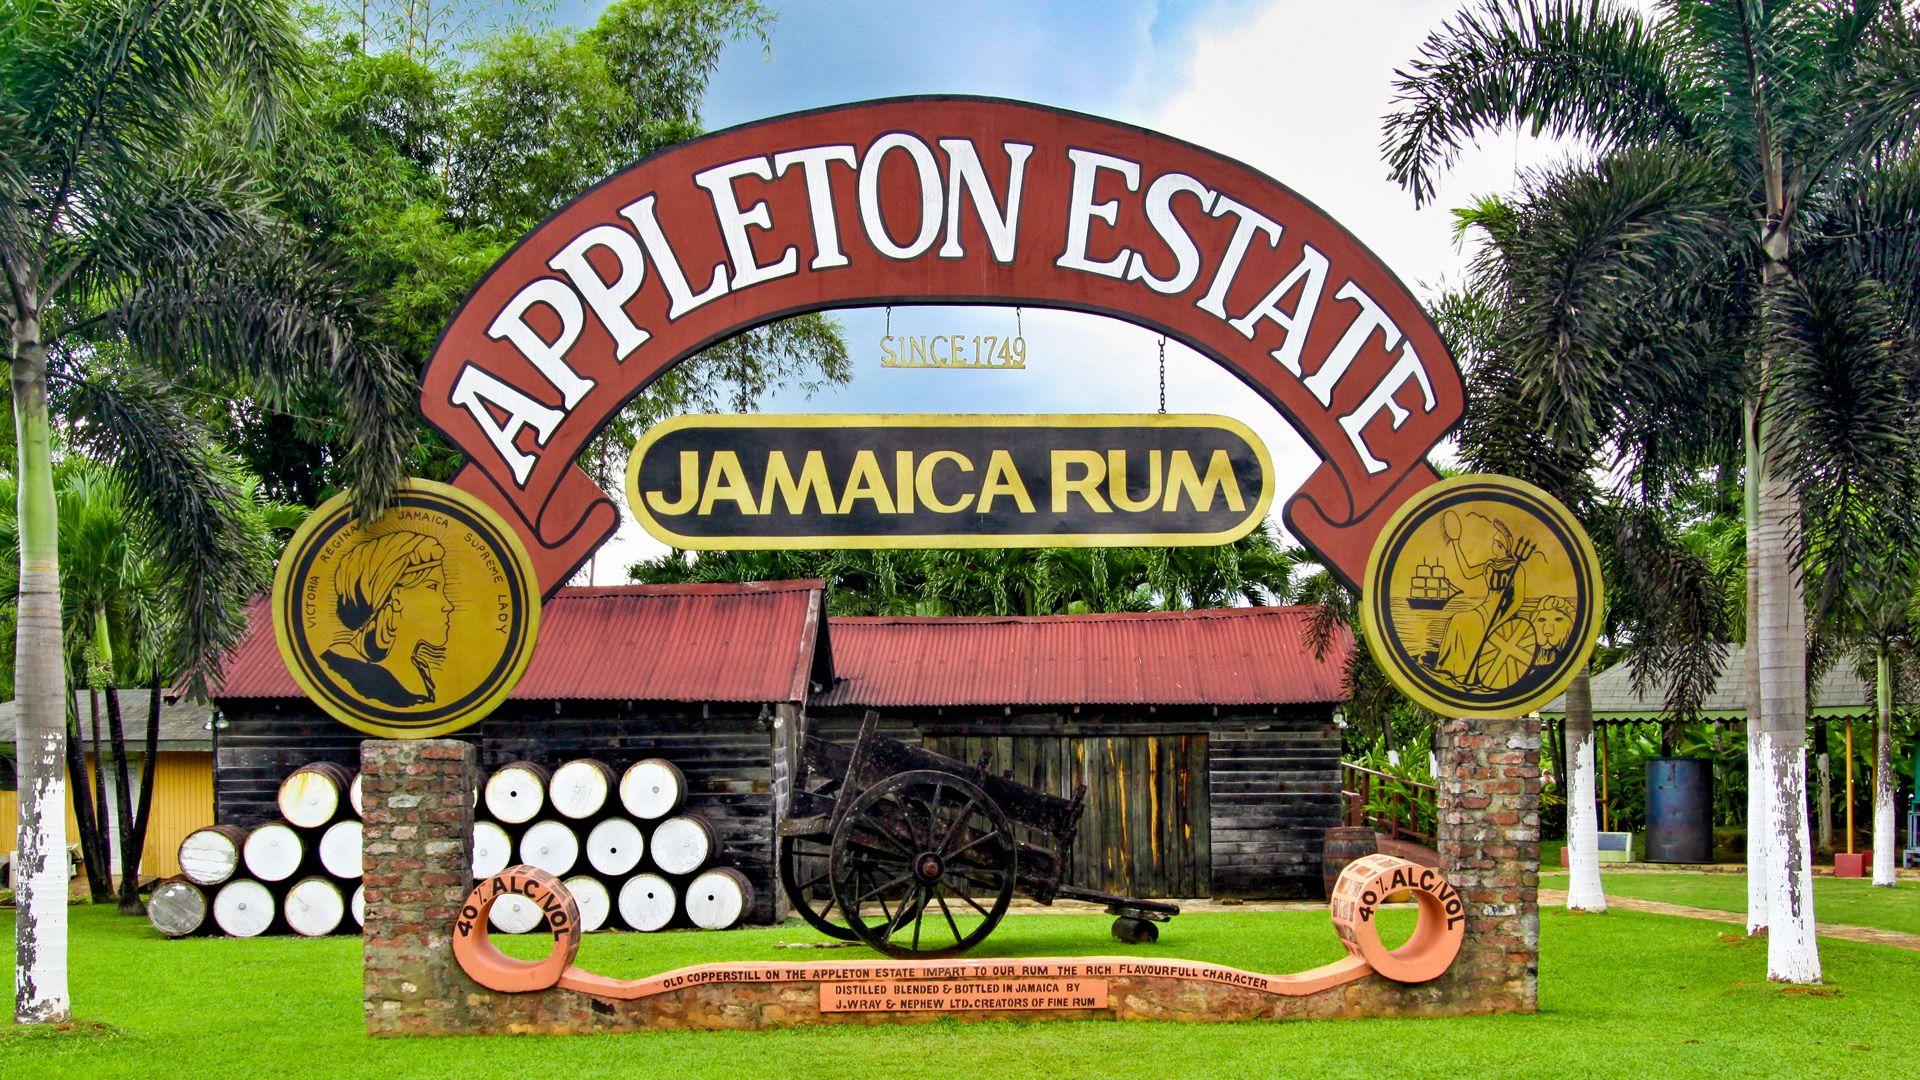 Appleton Estate Jamaica